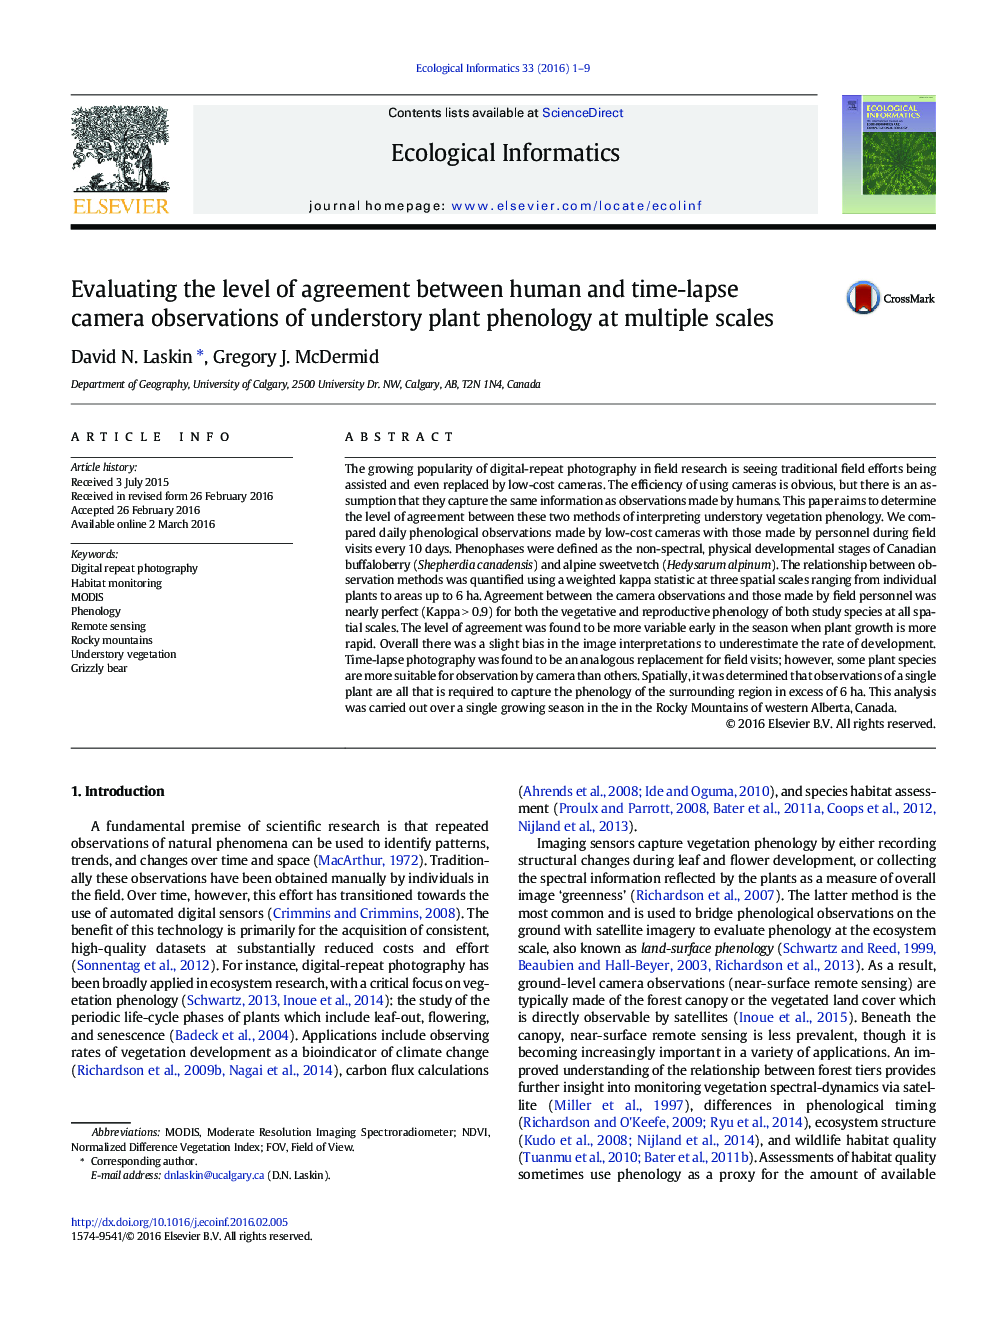 ارزیابی سطح توافق بین مشاهدات دوربین بین انسان و زمان باقی مانده از فنولوژی گیاه بوته در مقیاس های مختلف